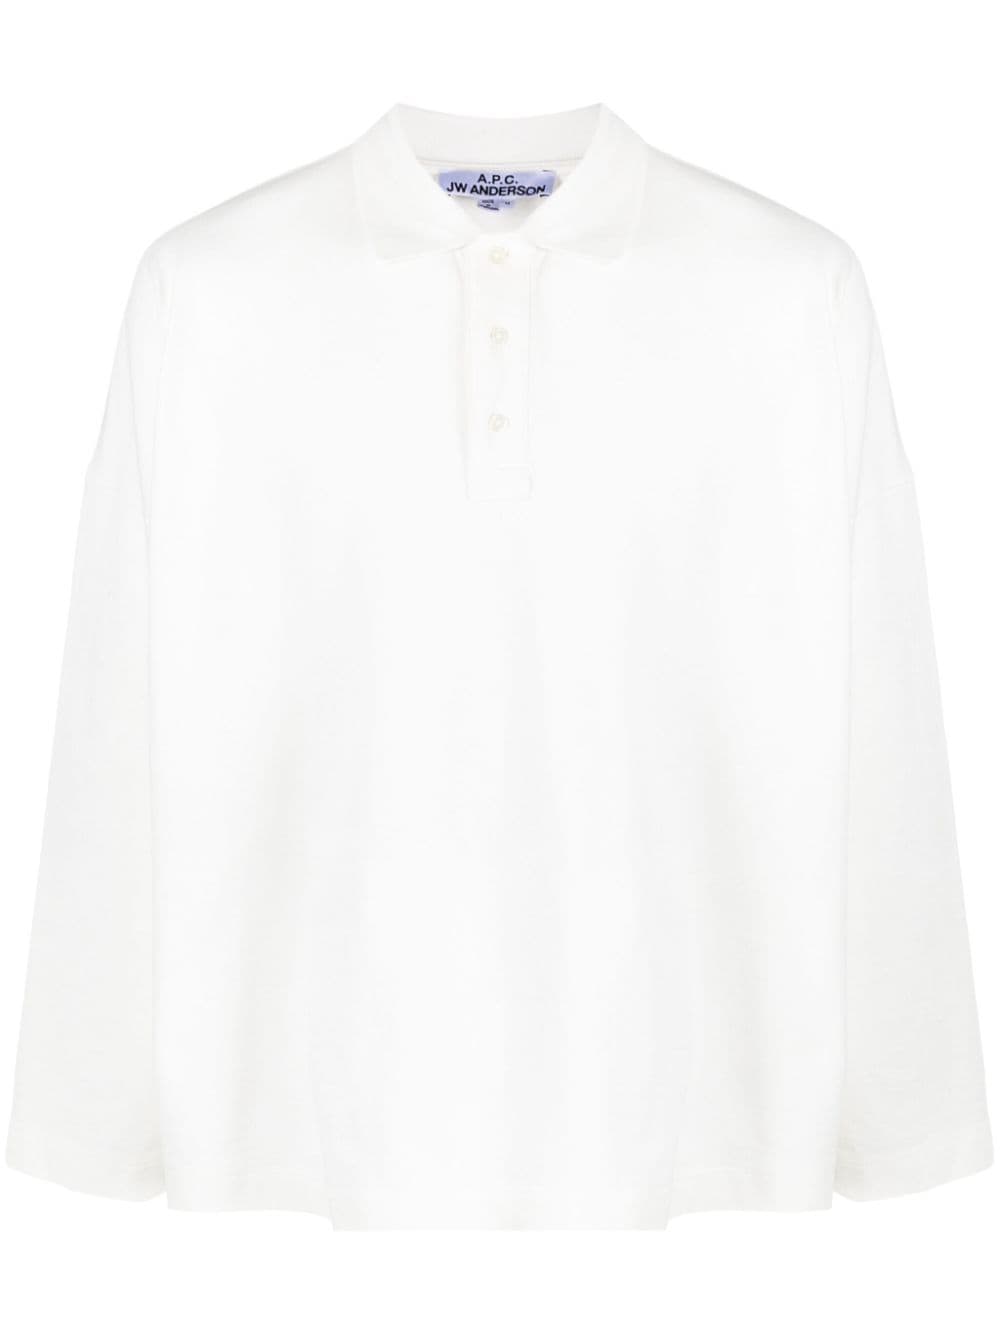 A.P.C. x JW Anderson polo shirt - White von A.P.C.